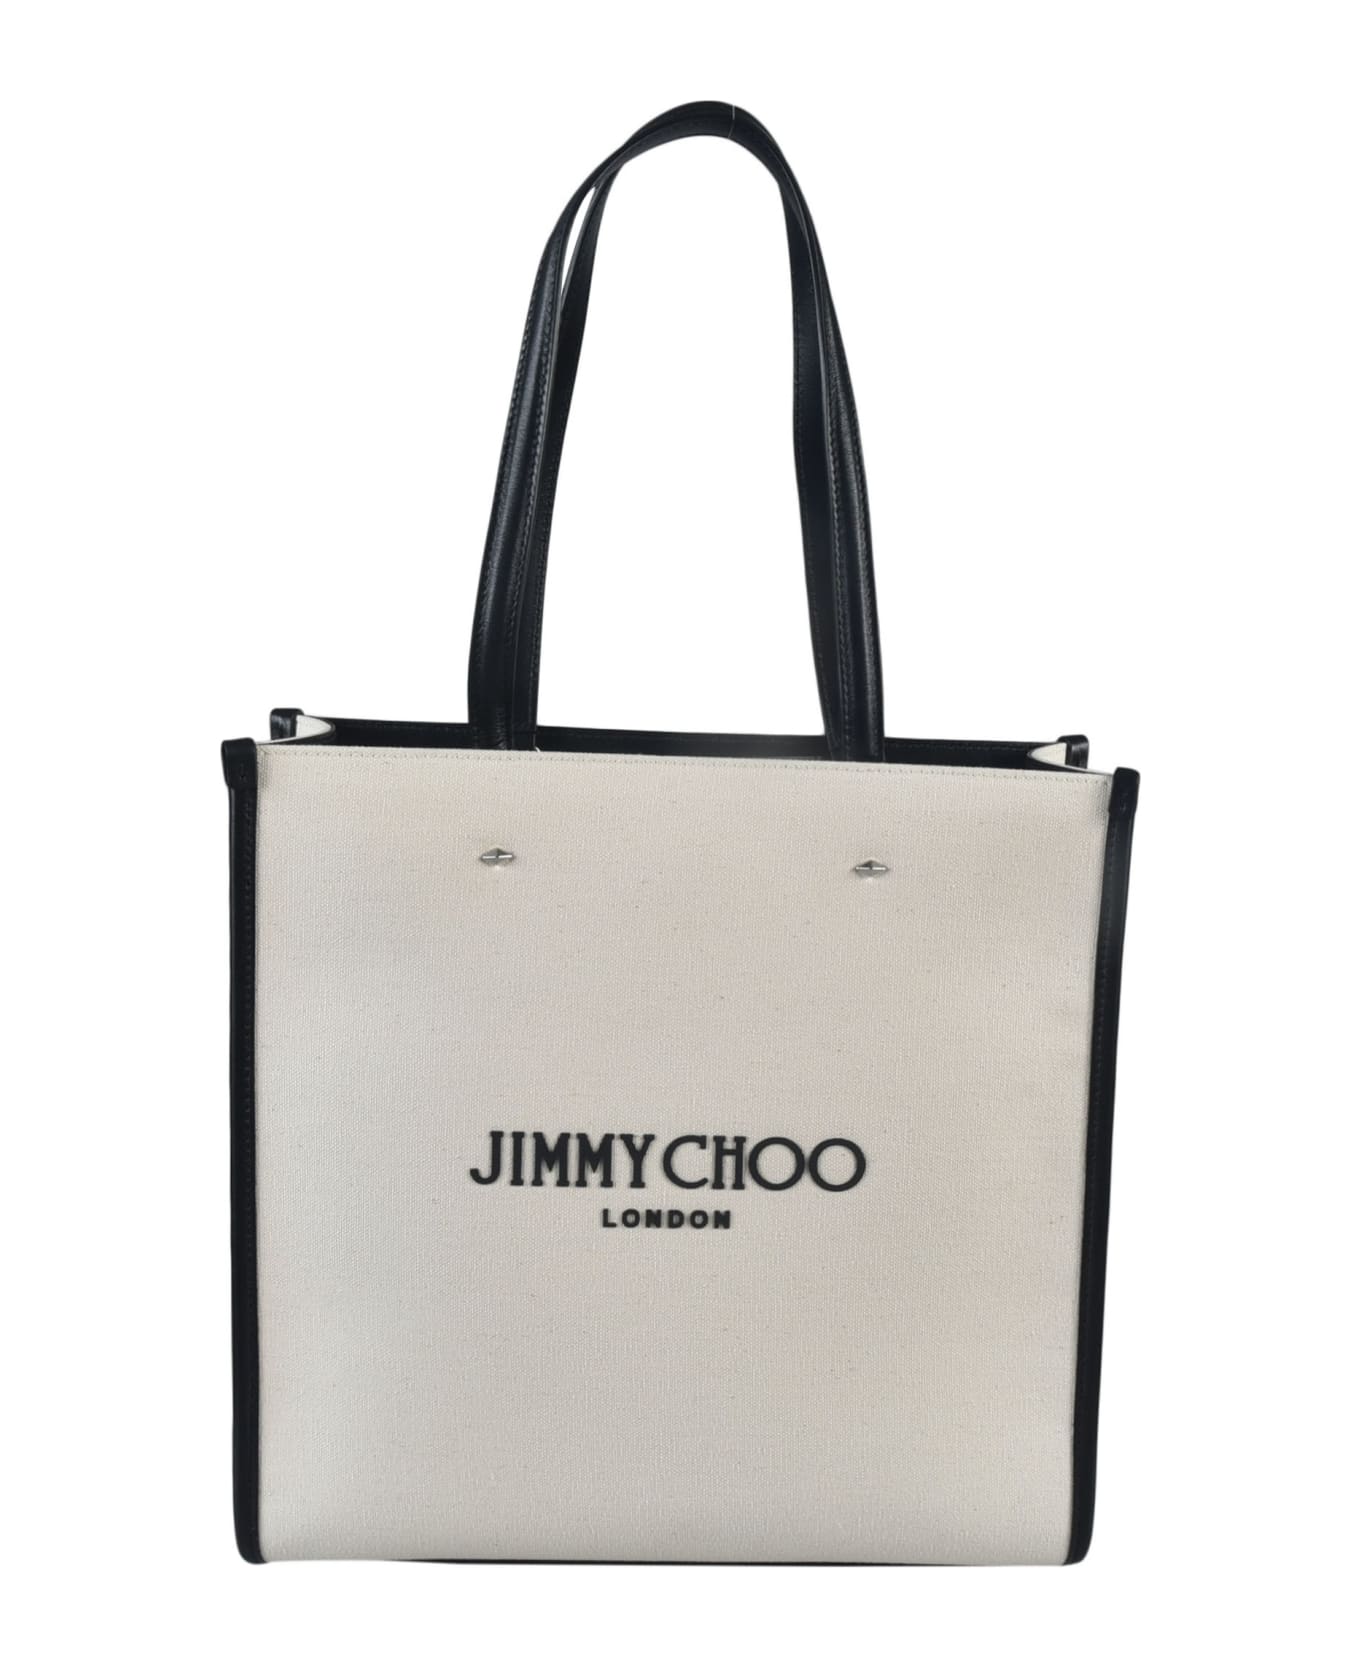 Jimmy Choo Logo Print Tote - Natural/Black/Silver トートバッグ